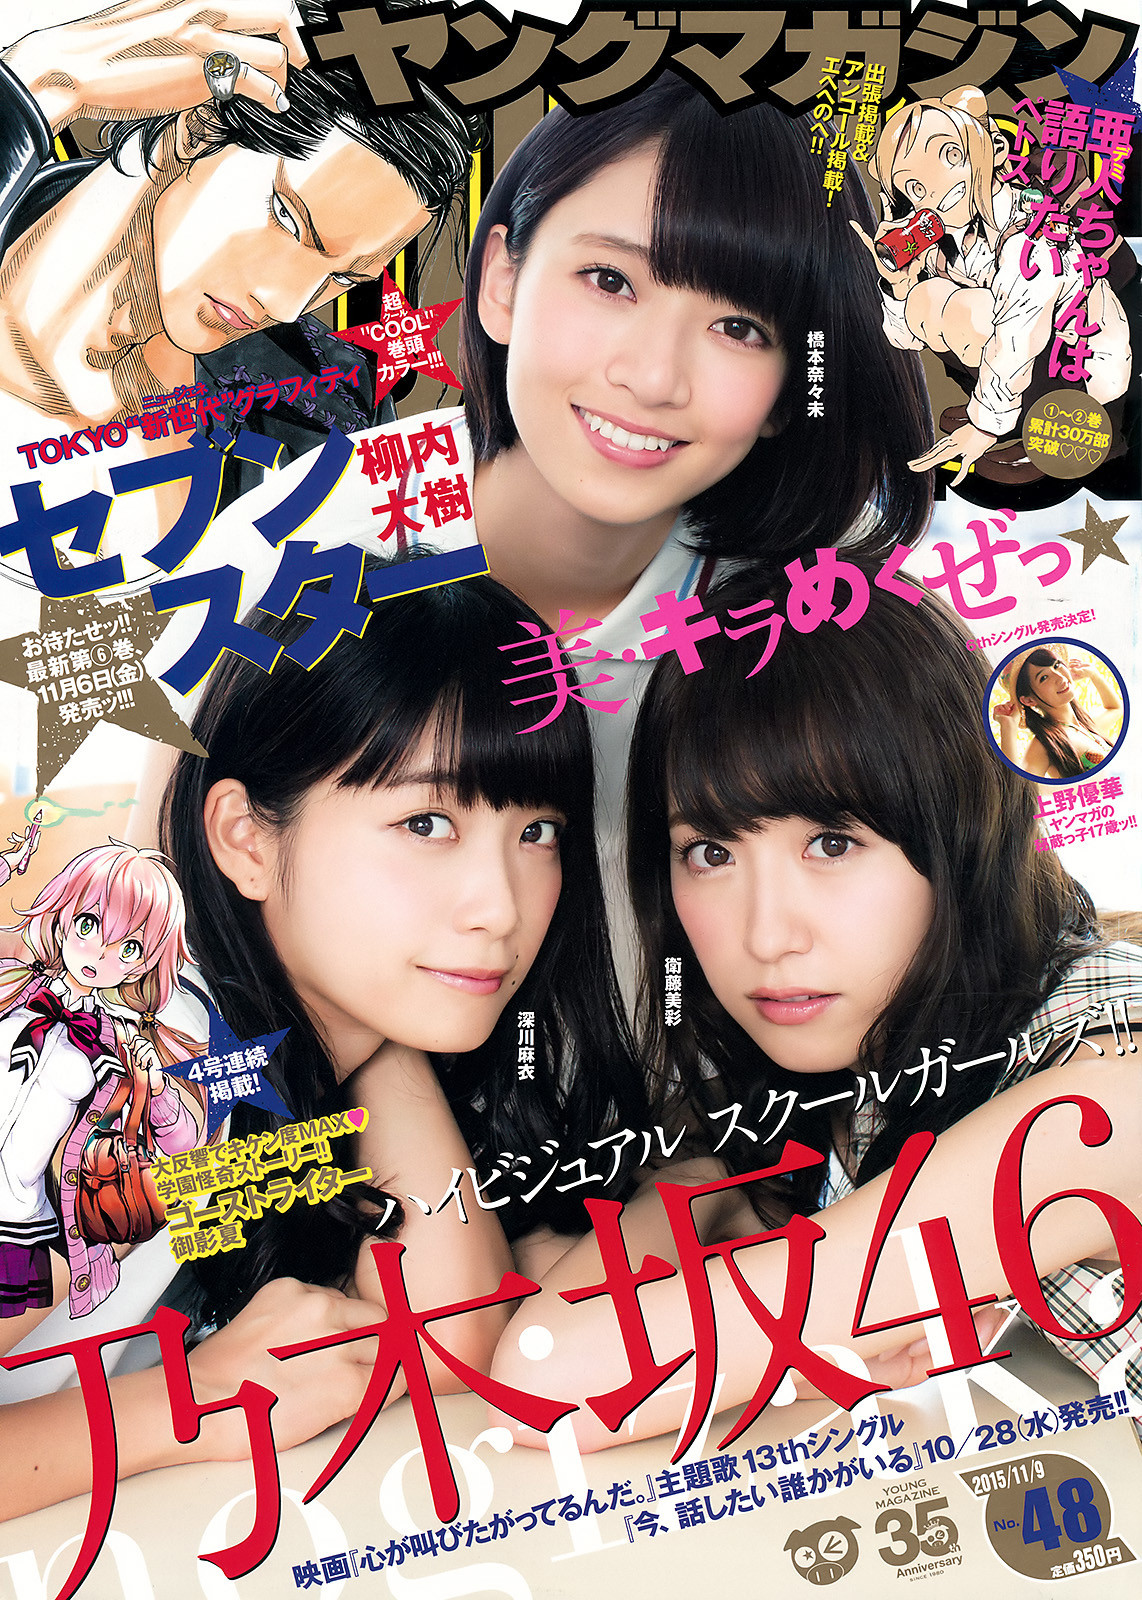 Young magazine. Японский журнал сестрички. Фукагава-МЭСИ. Журнал Nana японский.